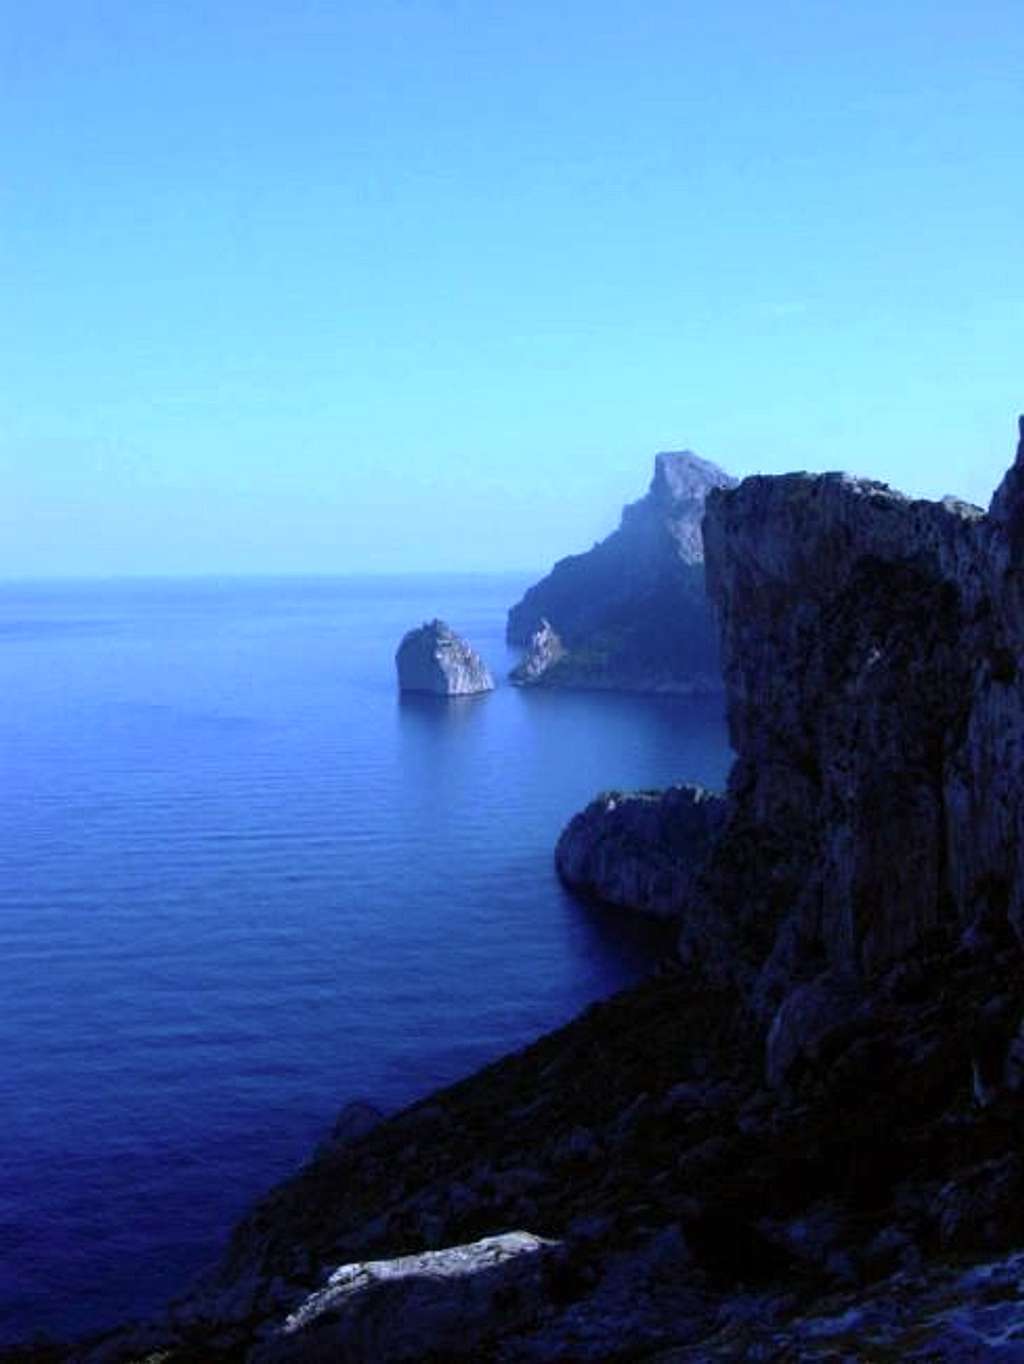 The seaside cliffs of Creveta...